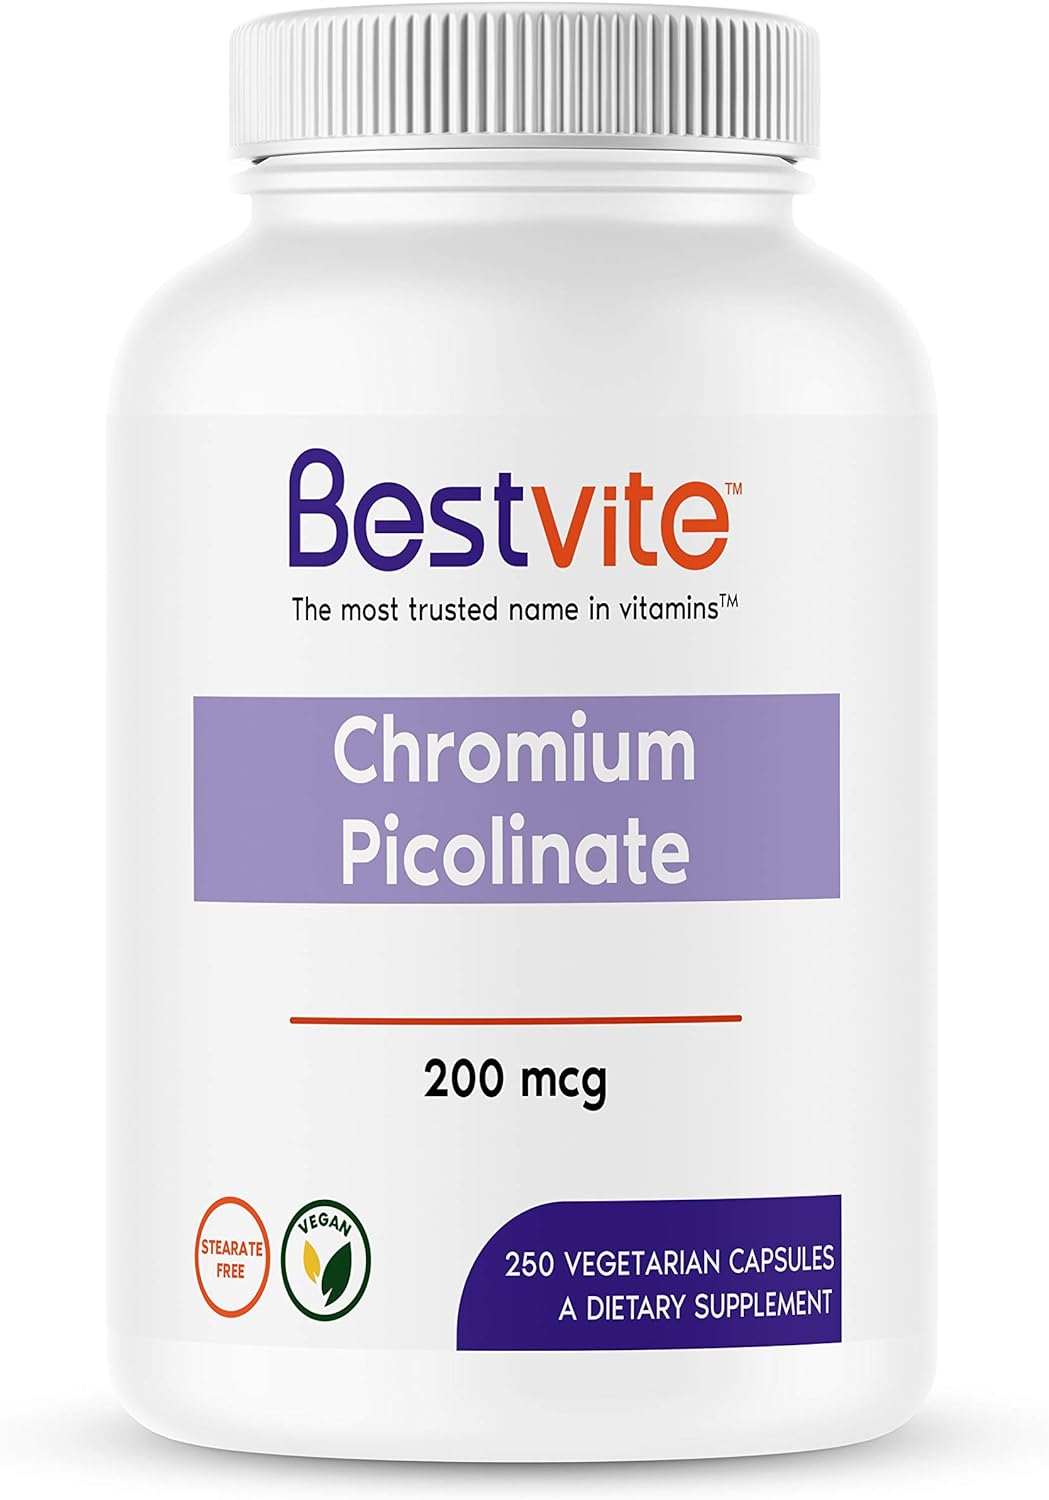 BESTVITE Chromium Picolinate 200mcg (250 Vegetarian Capsules) - No Ste